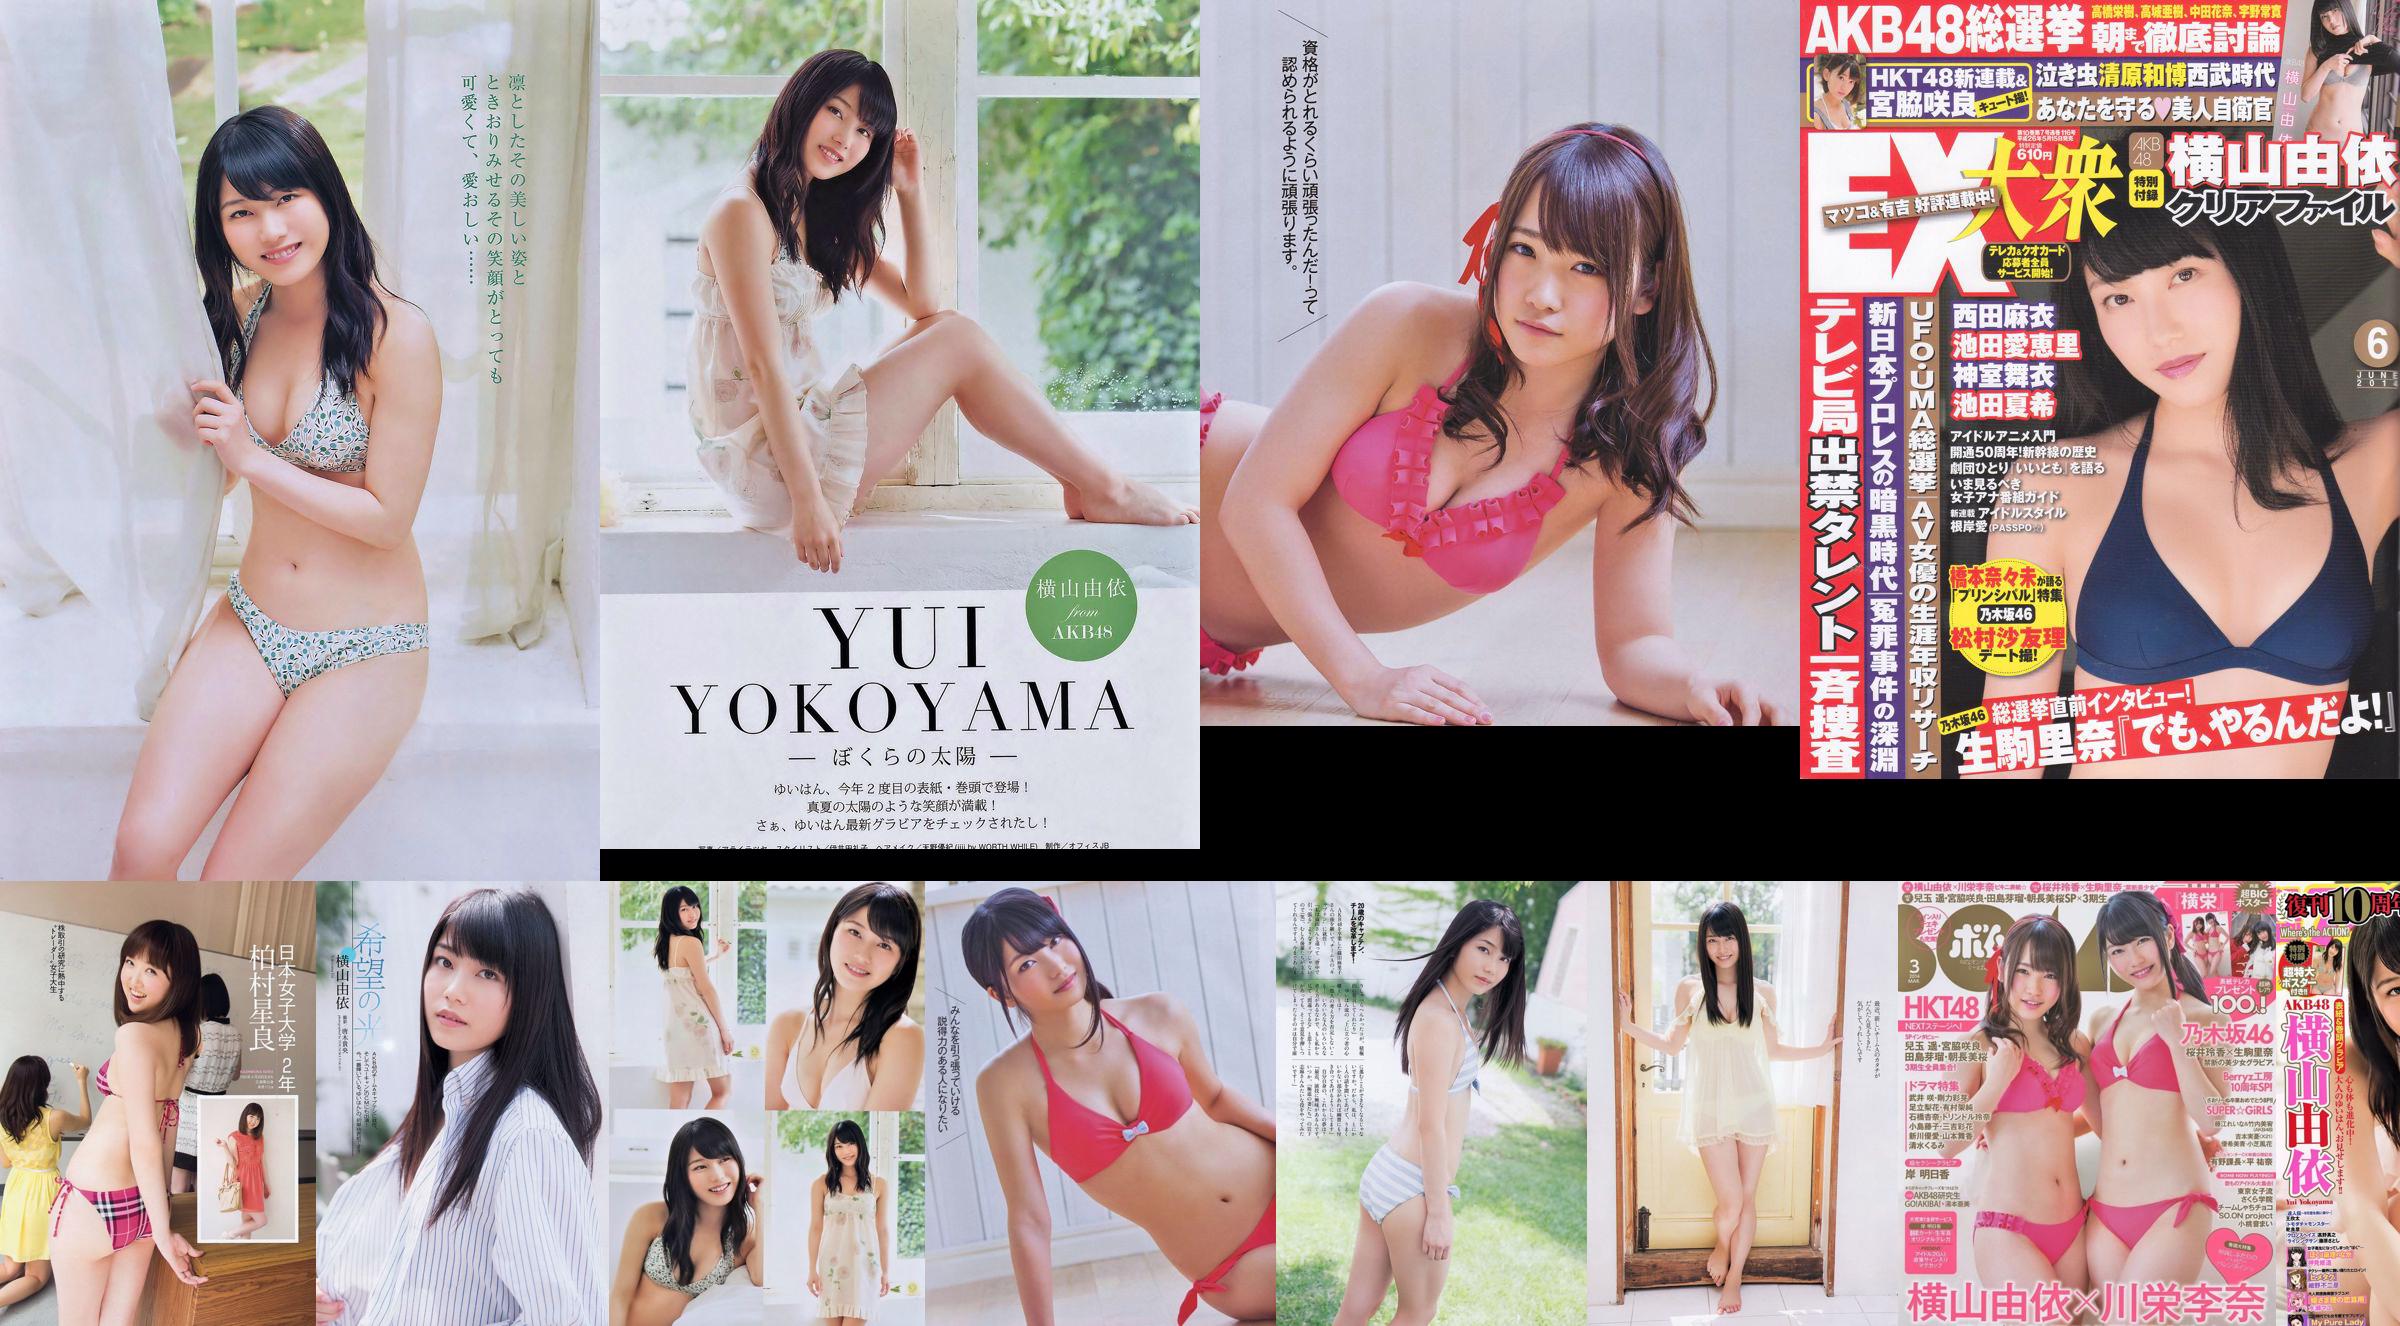 Yui Yokoyama Nozomi Sasaki Rina Koike Asuka Kuramochi Miwako Kakei Risa Yoshiki Ruri Shinato [Weekly Playboy] 2013 No.38 Fotografia No.2344fe Pagina 8